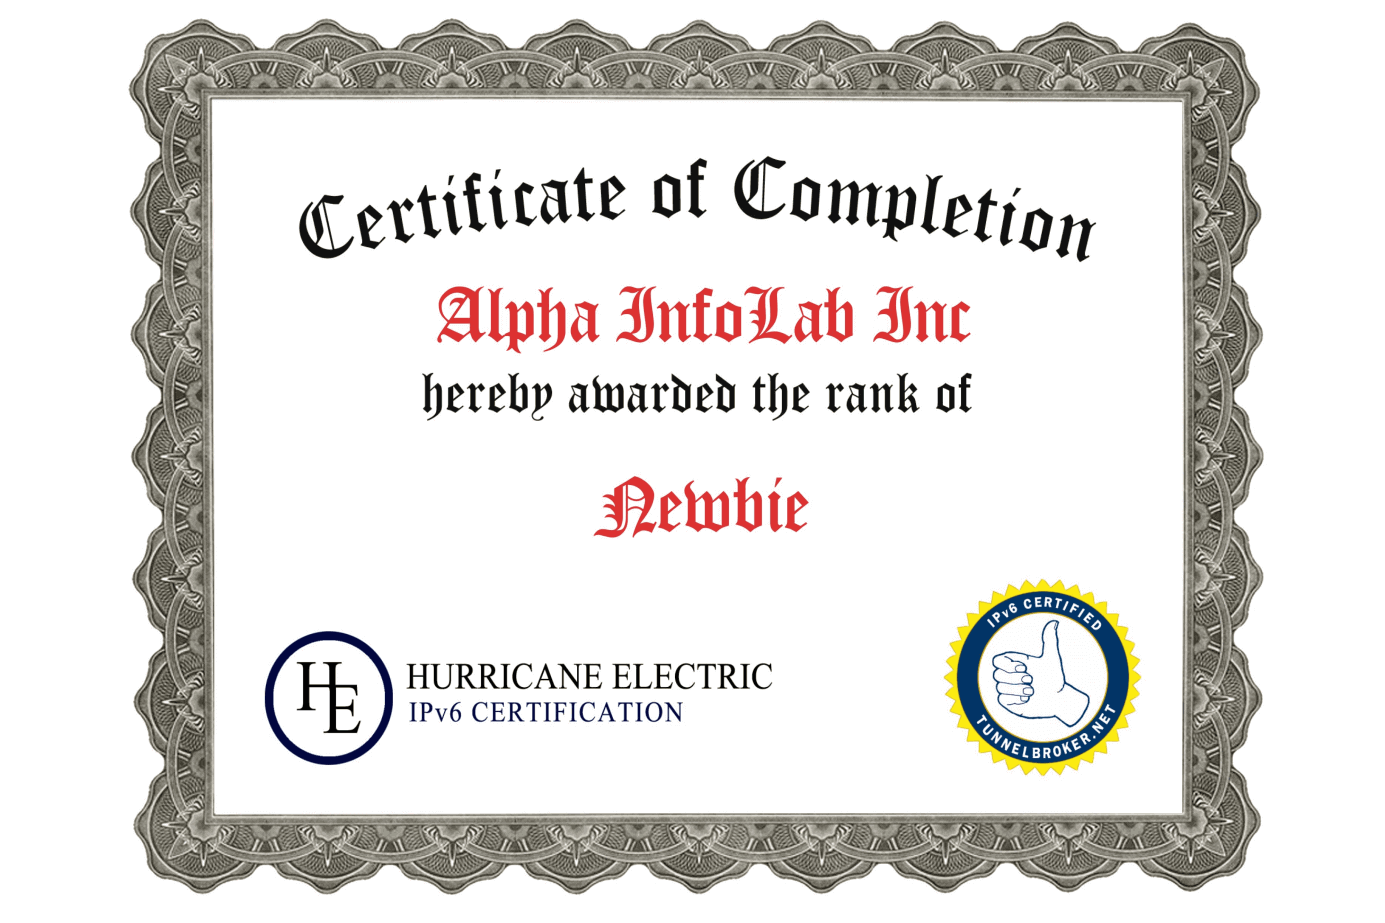 1A-Certificate